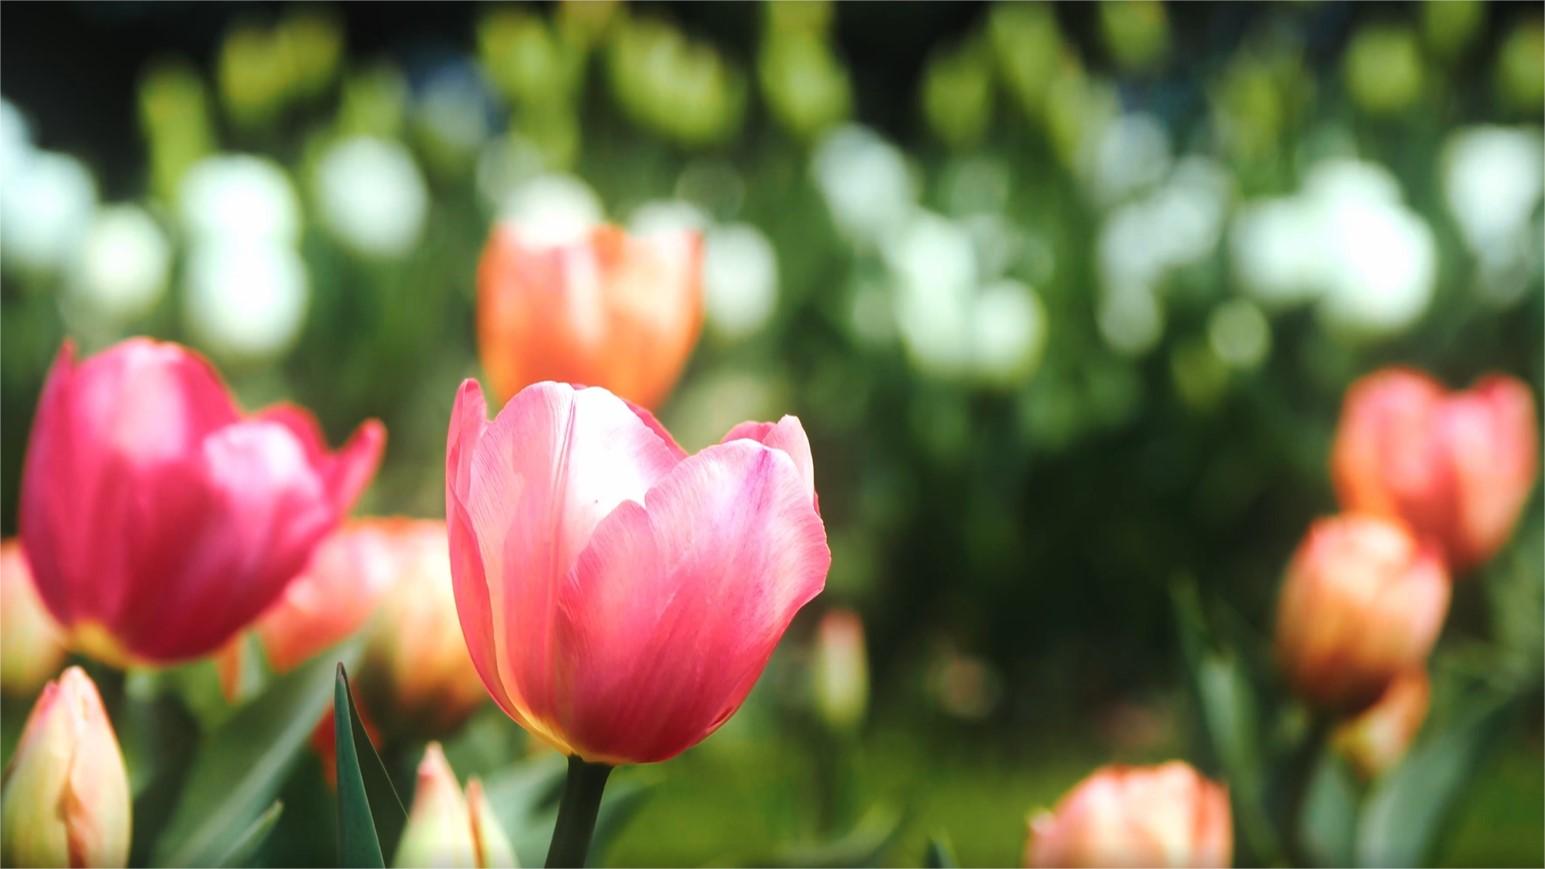 Spring splendor: Tulips in bloom